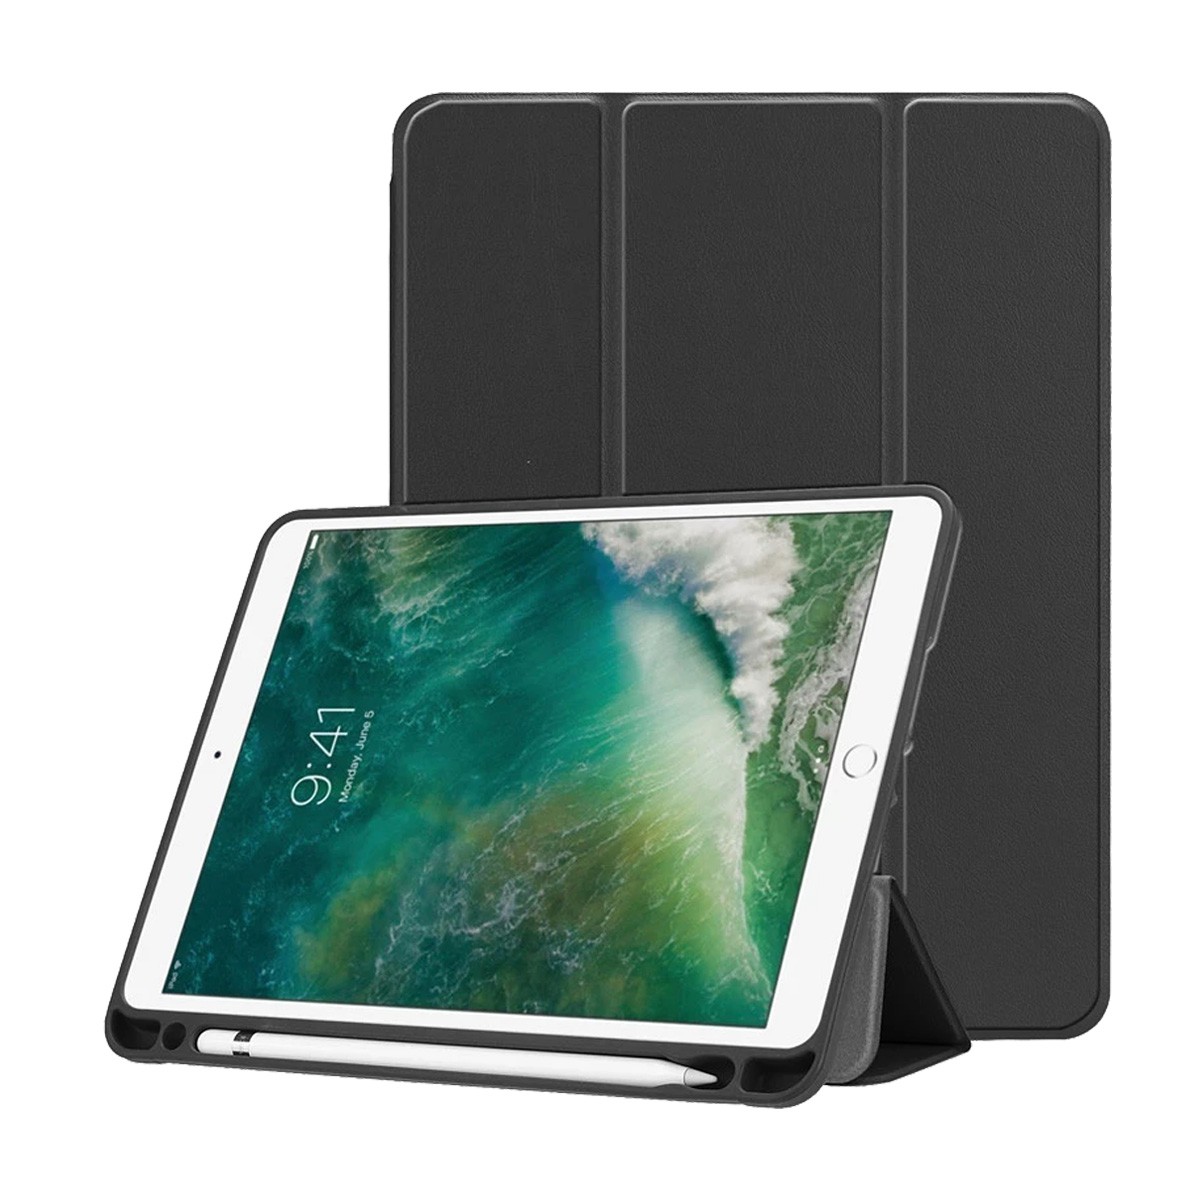 iPad 第9世代 ケース iPad mini 6 5 ケース iPad Air 5 4 3 2 ケース iPad Pro 10.5 第6 第7 第8 世代 カバー 手帳型 タッチペン収納 おしゃれ 耐衝撃 スタンド